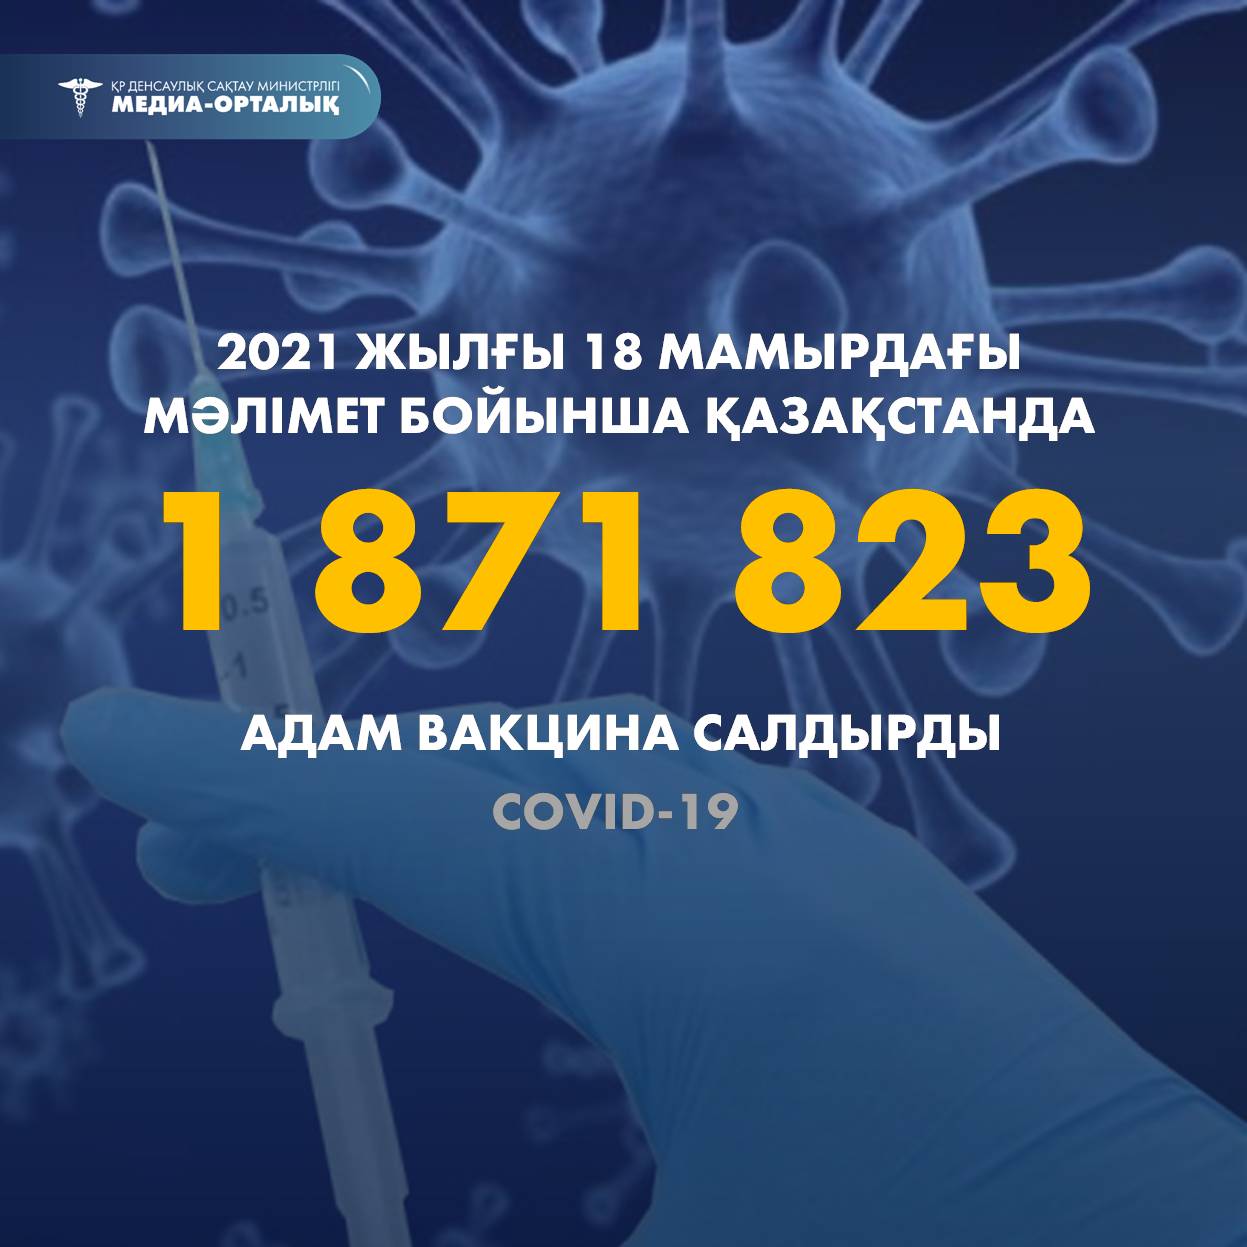 2021 жылғы 18 мамырдағы мәлімет бойынша Қазақстанда 1 871 823 адам вакцина салдырды